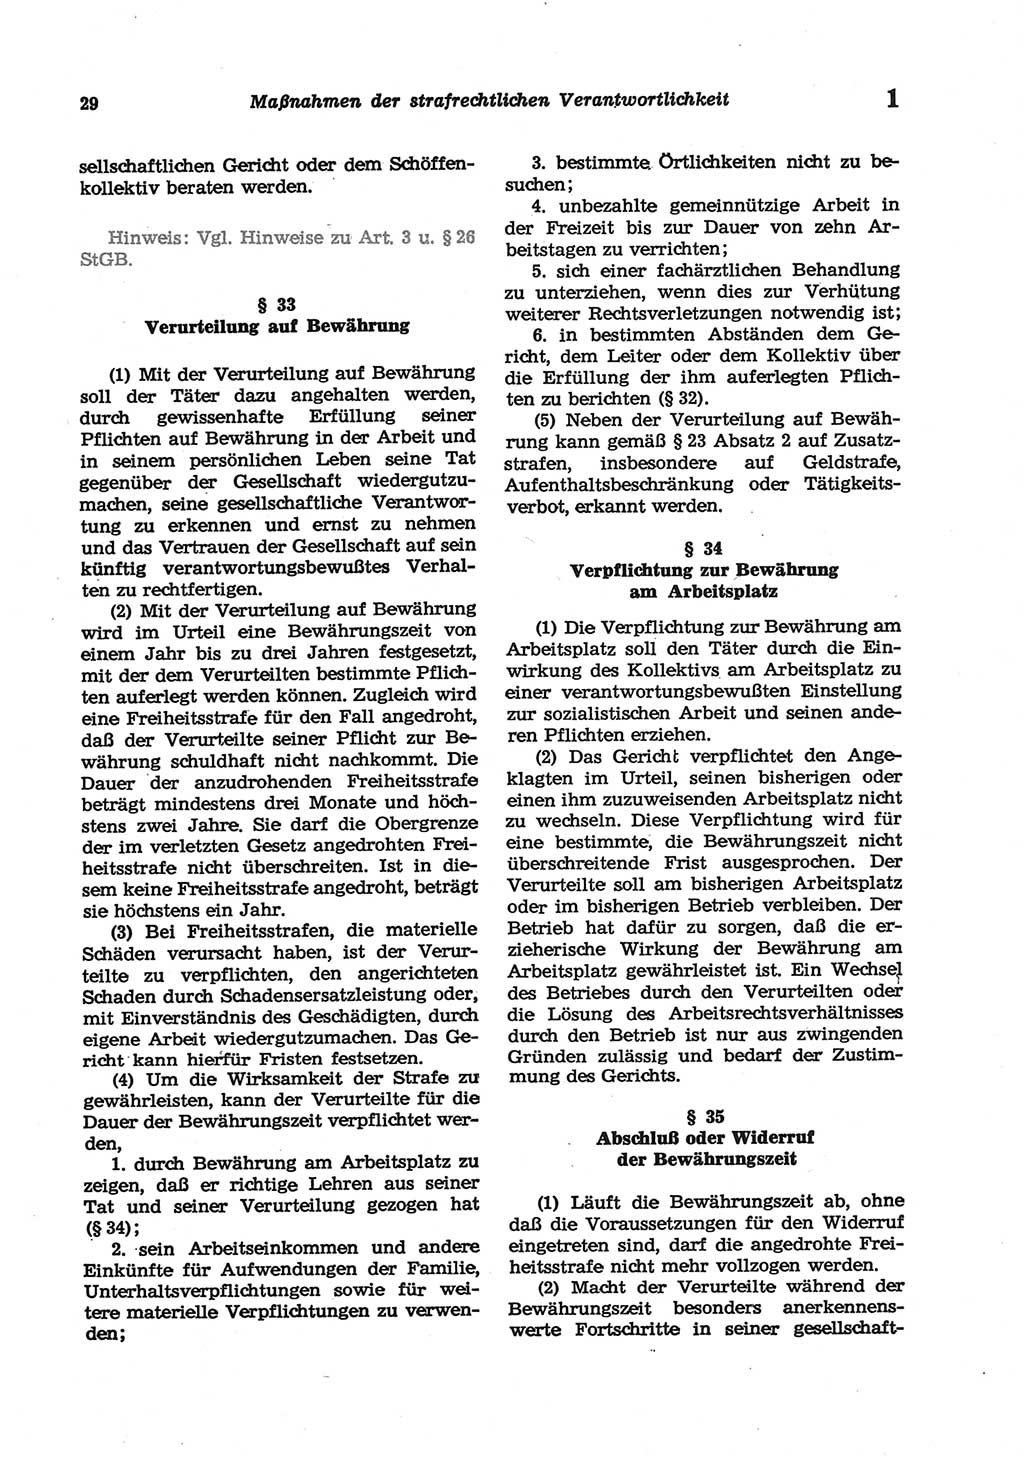 Strafgesetzbuch (StGB) der Deutschen Demokratischen Republik (DDR) und angrenzende Gesetze und Bestimmungen 1977, Seite 29 (StGB DDR Ges. Best. 1977, S. 29)